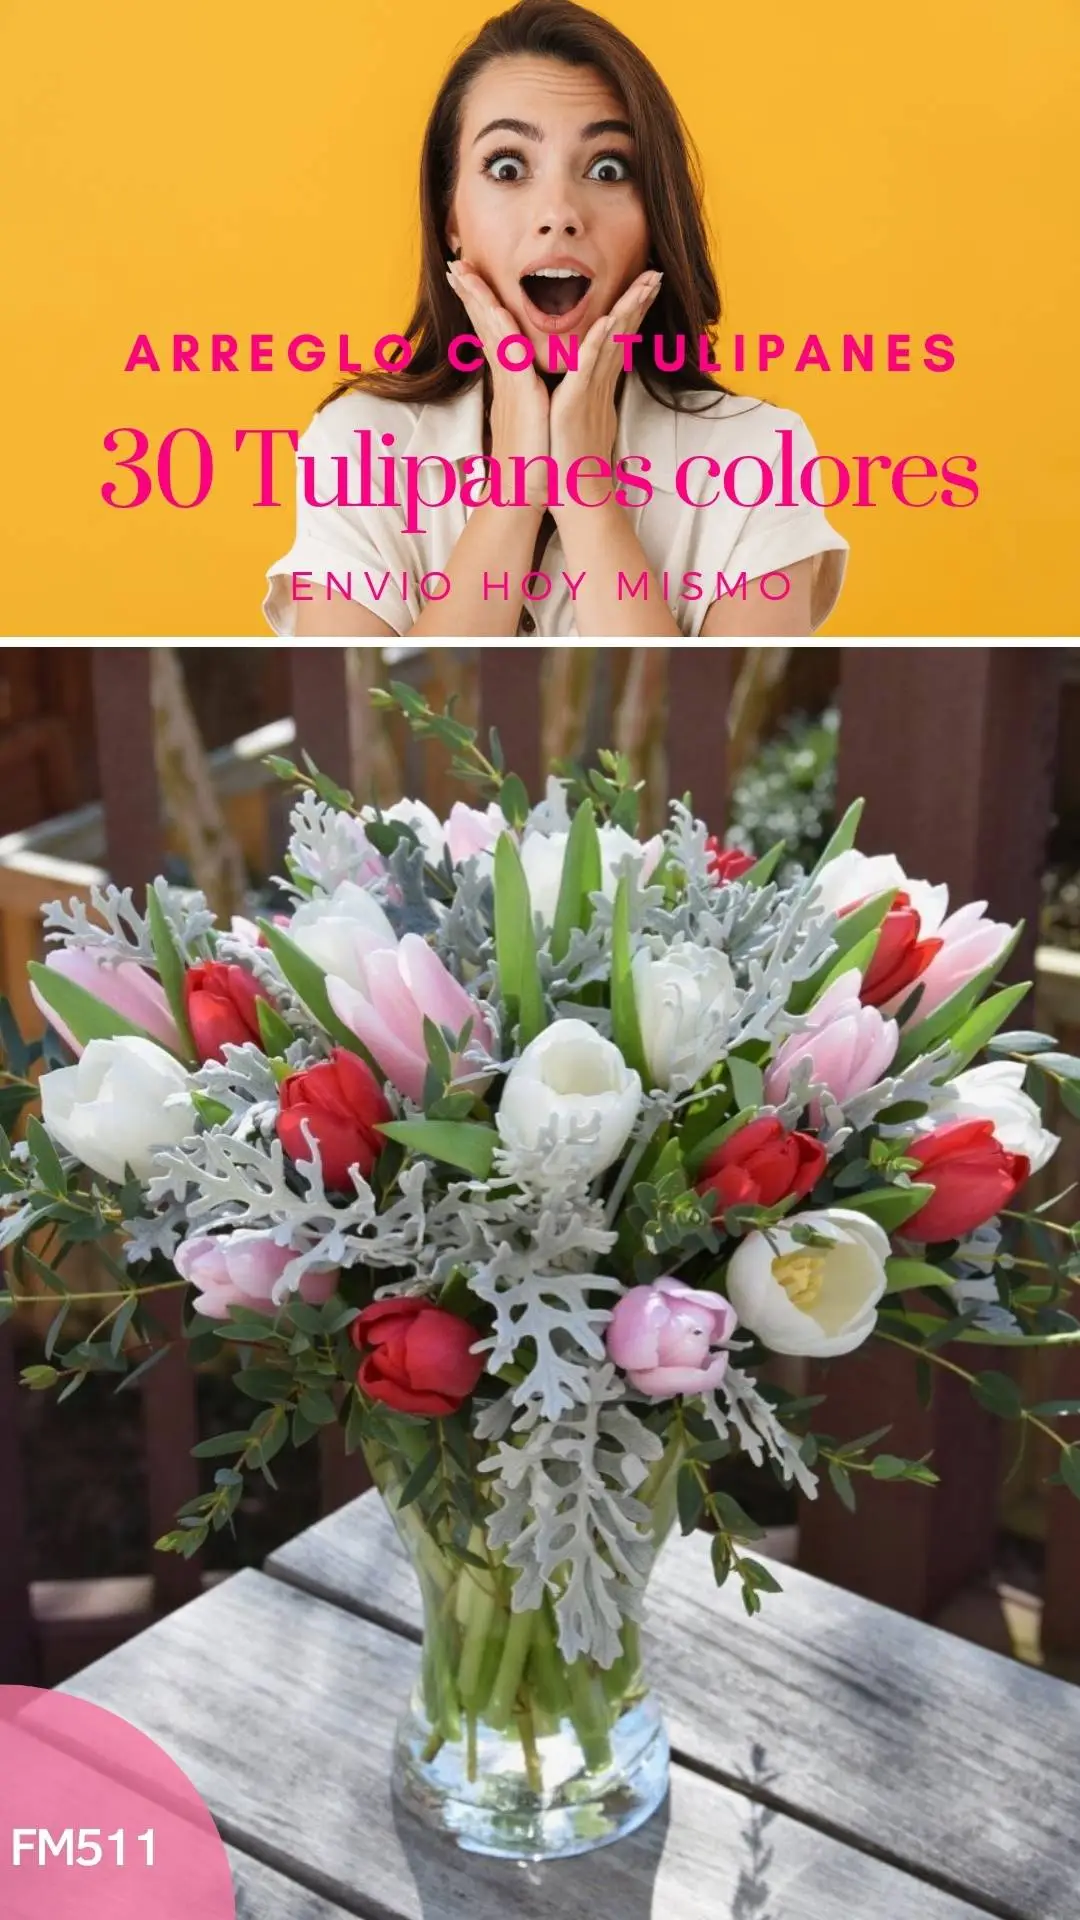 Arreglo con 30 tulipanes miller